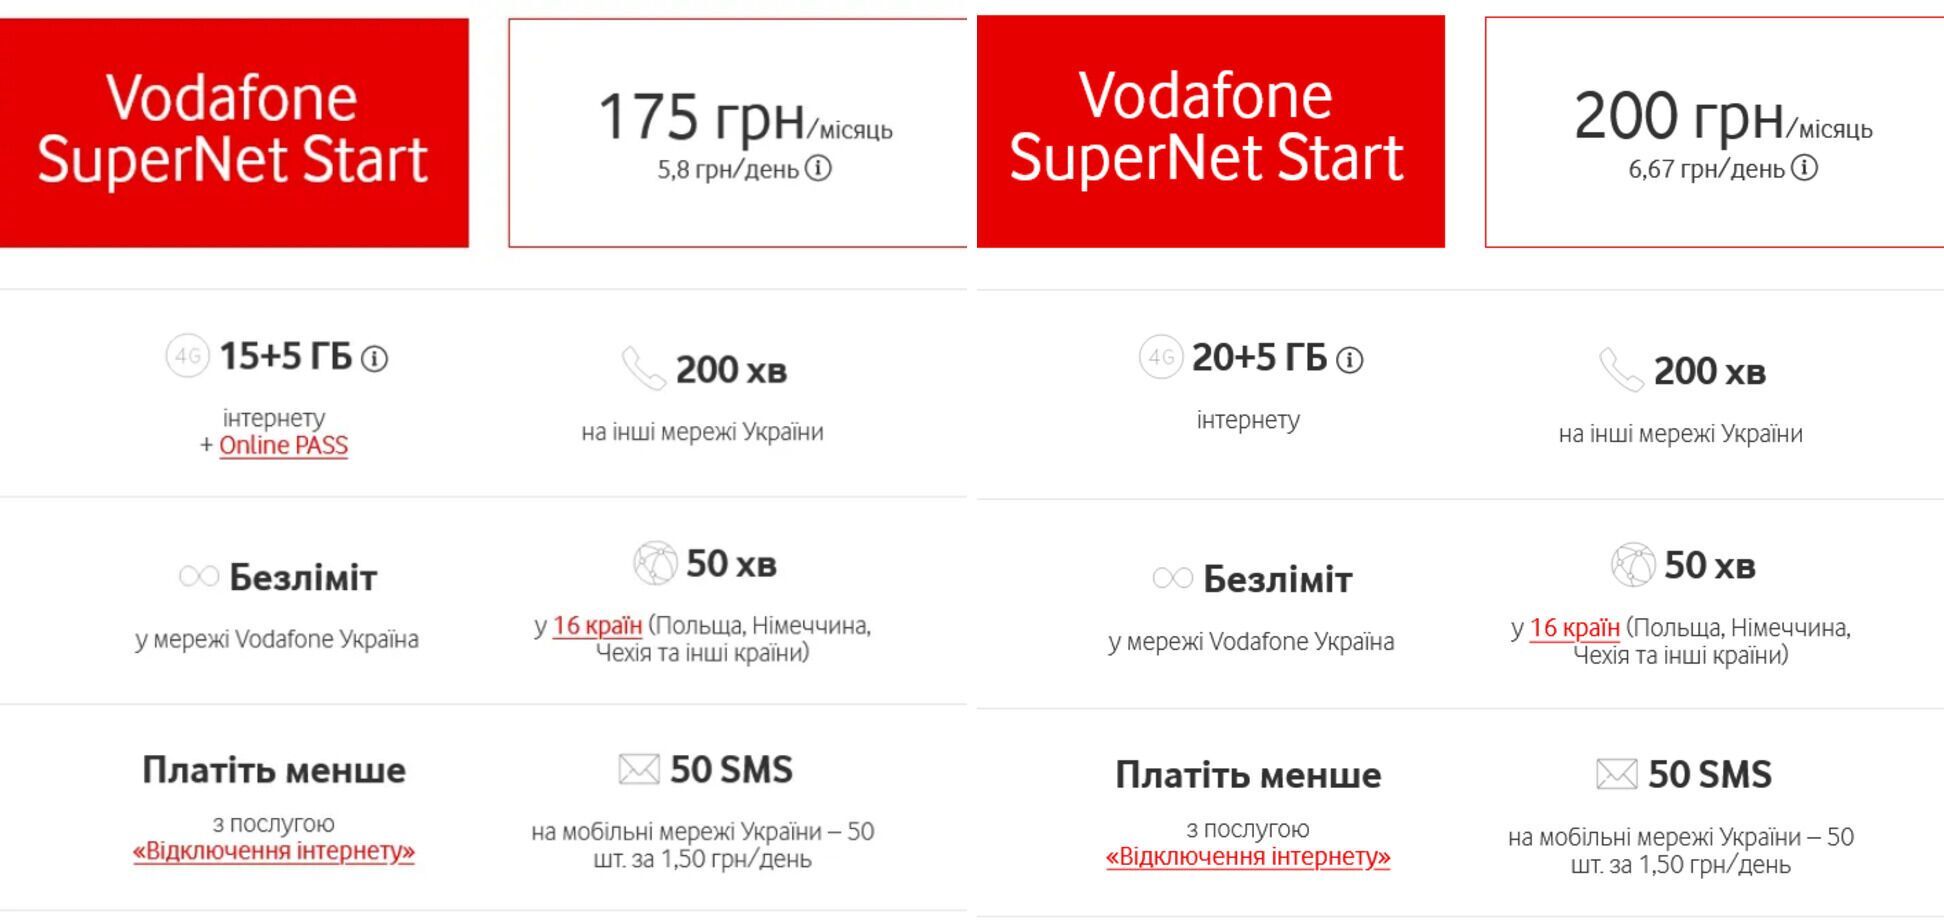 Стоимость тарифа SuperNet Start увеличилась на 25 грн/месяц